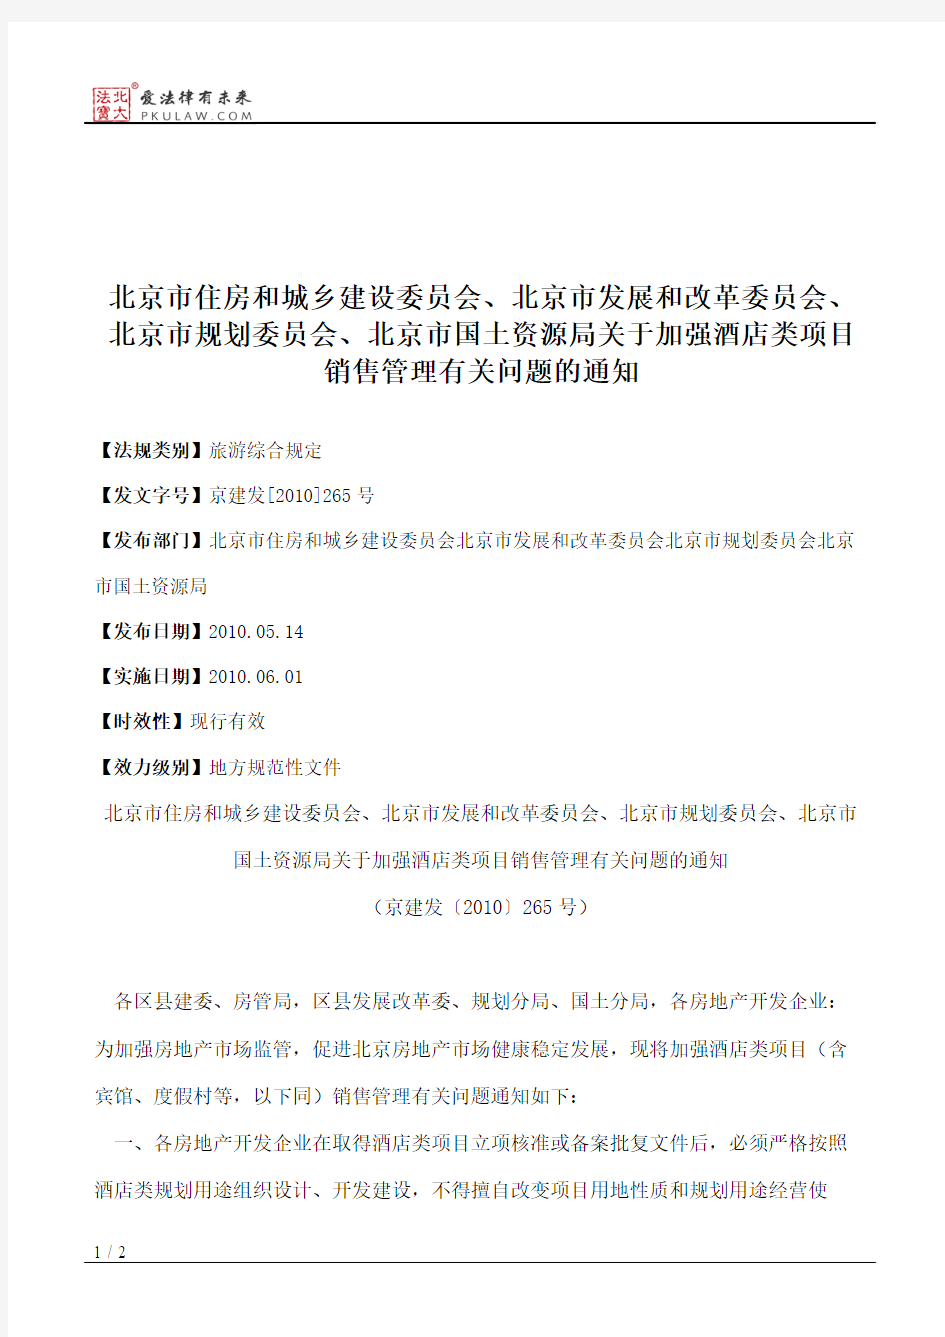 北京市住房和城乡建设委员会、北京市发展和改革委员会、北京市规